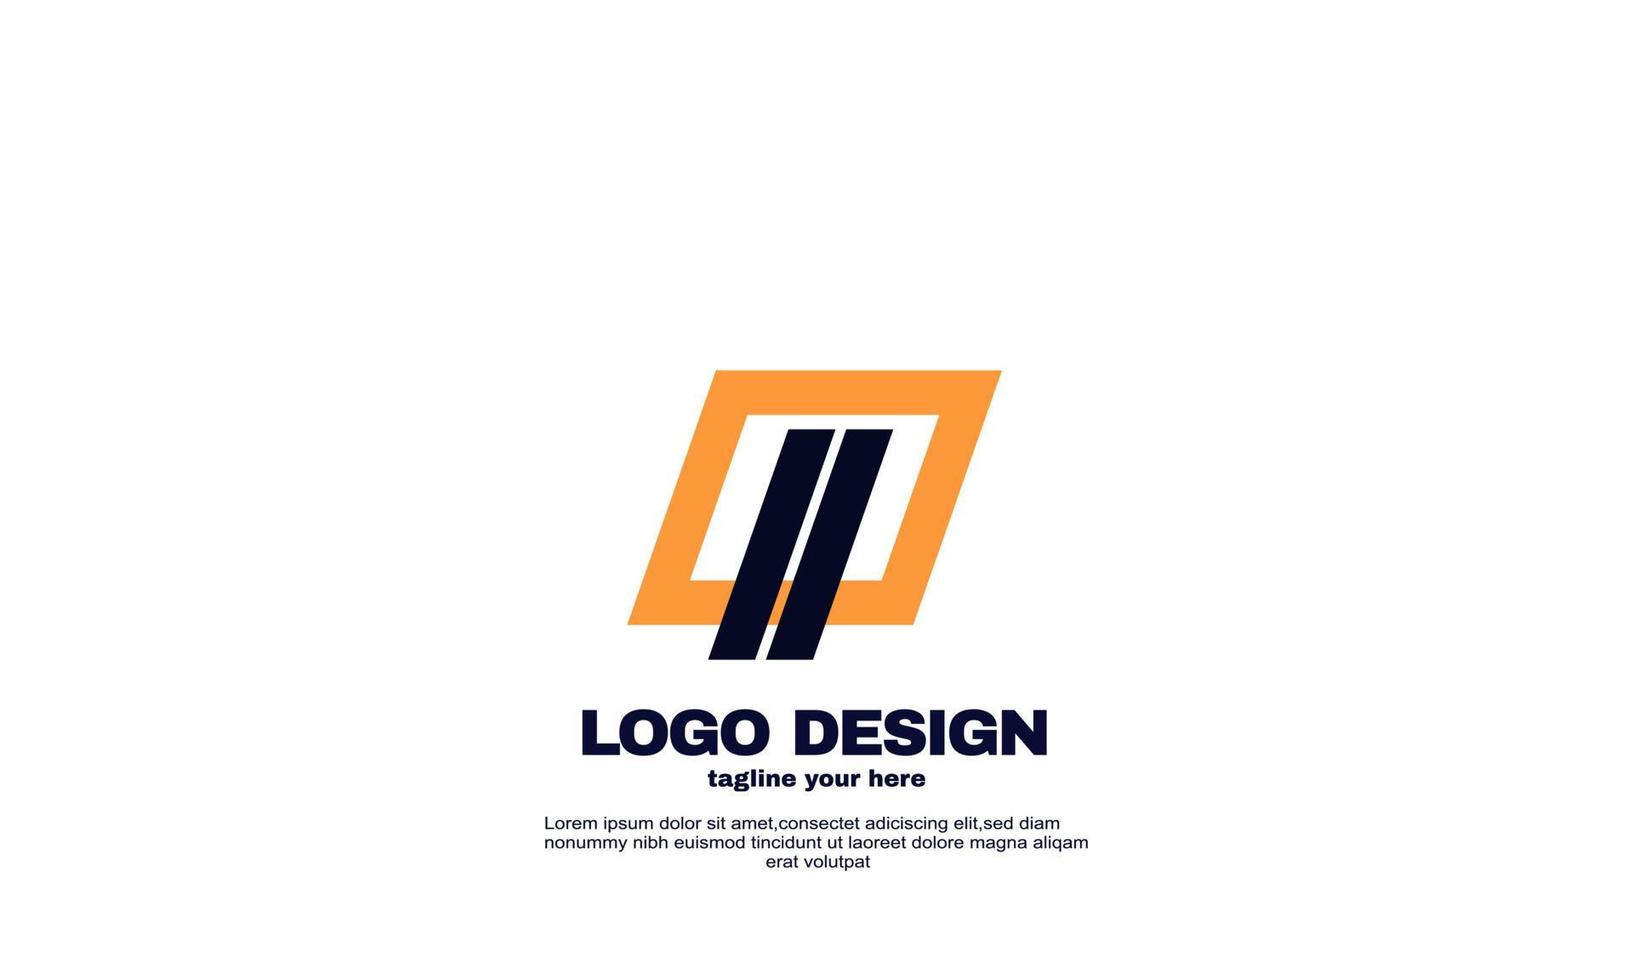 impresionante inspiración creativa mejor logotipo poderosa empresa geométrica logística y diseño de logotipo comercial vector